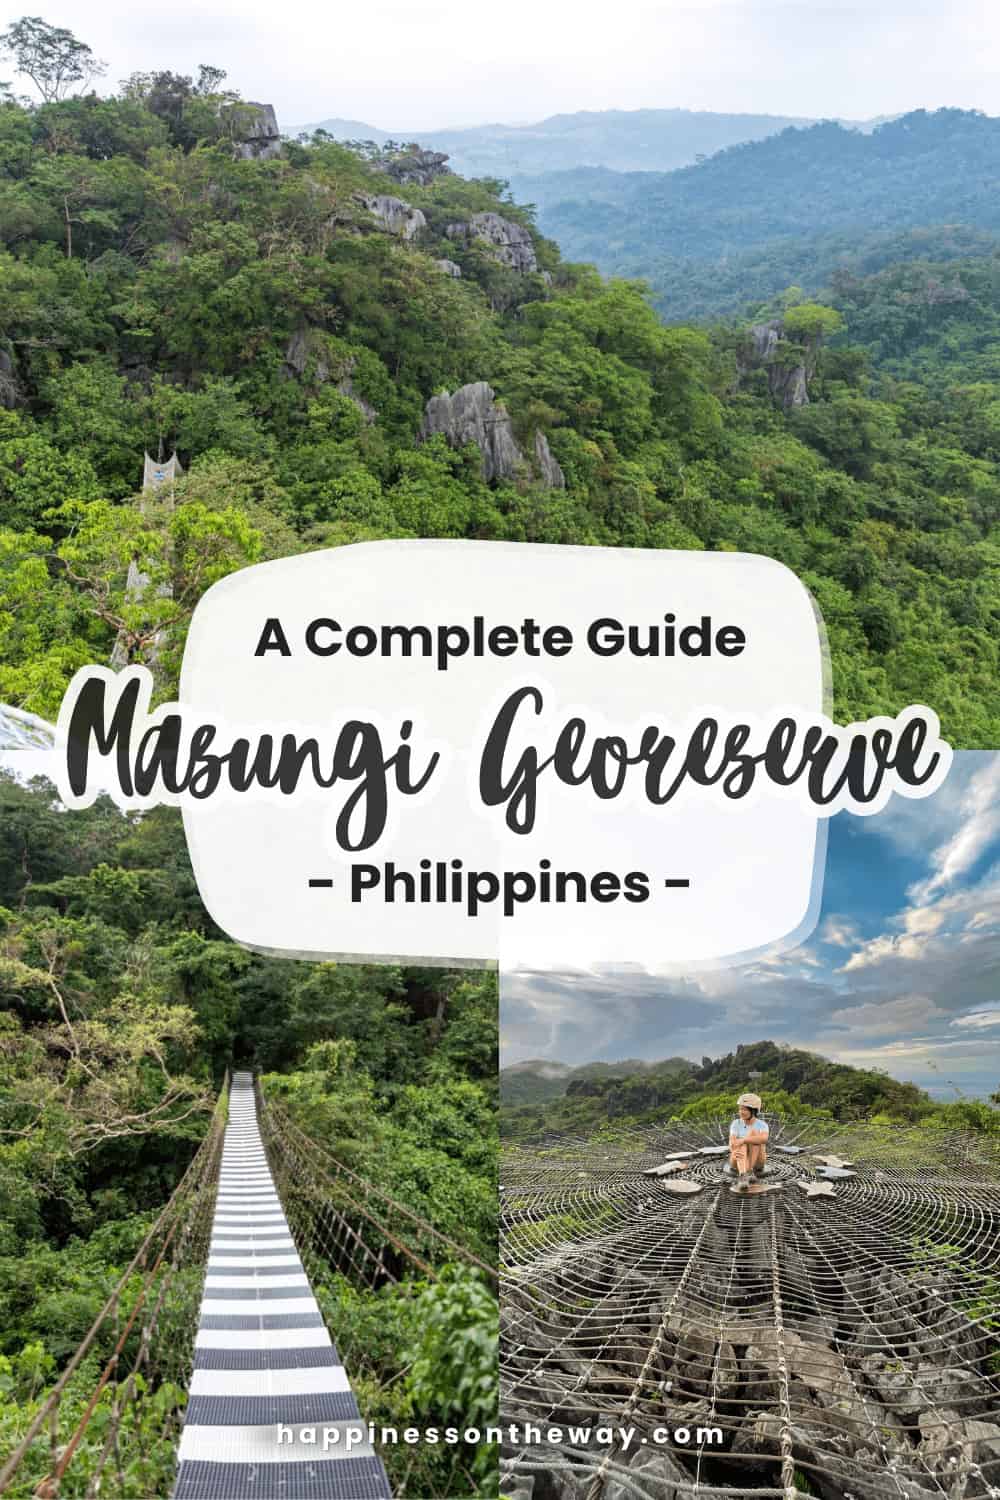 Masungi Georeserve: A Complete Guide to Manila's Hidden Gem